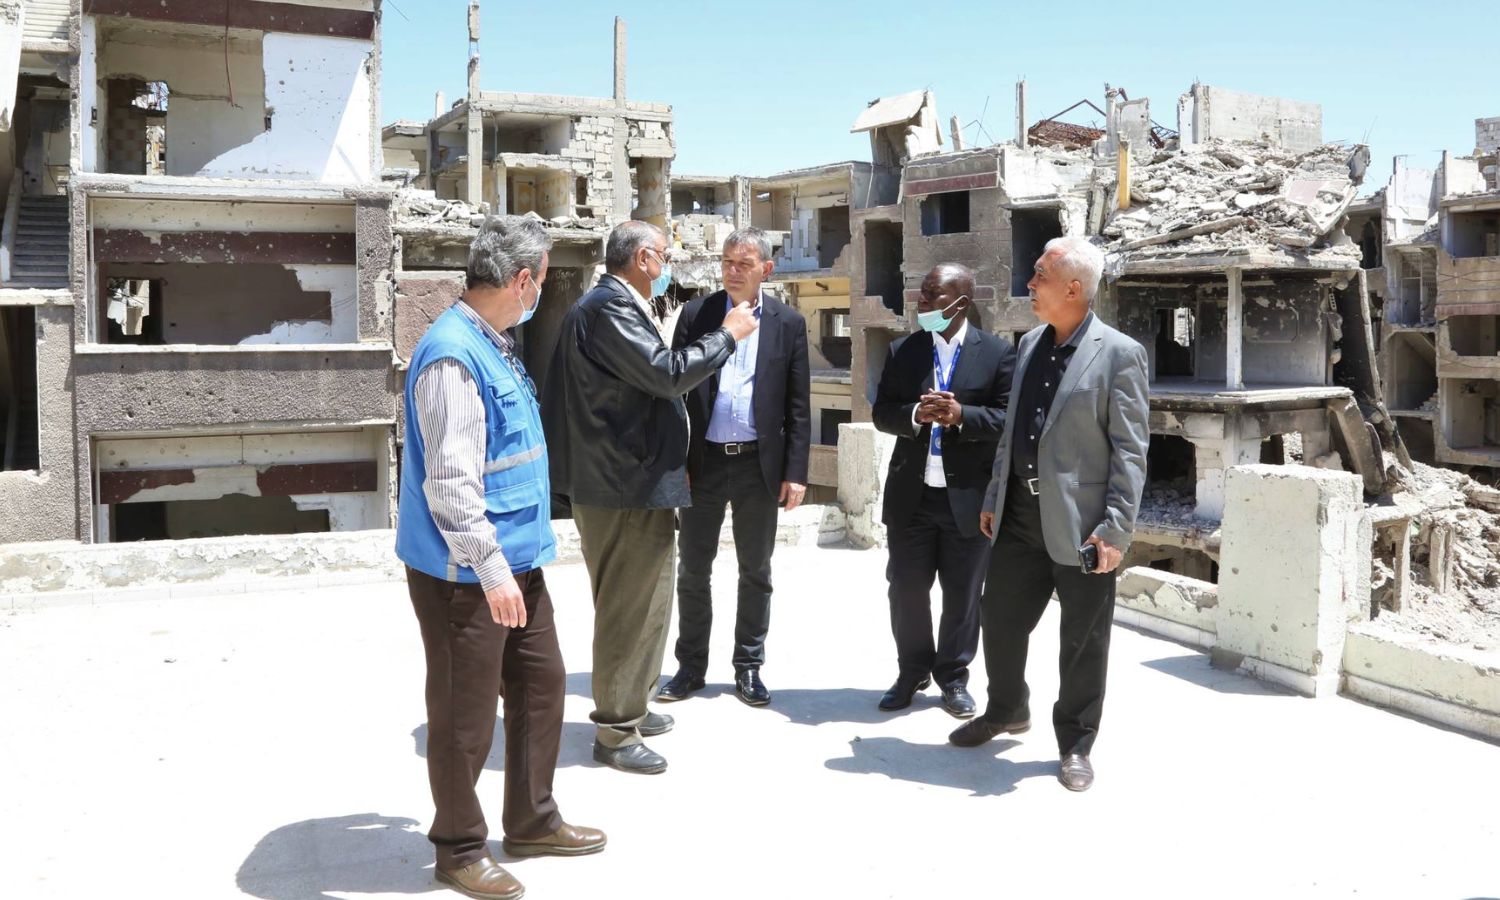 المفوض العام لوكالة الأمم المتحدة لغوث وتشغيل اللاجئين الفلسطينيين (أونروا)، فيليب لازاريني (منتصف الصورة) في زيارة لمناطق اللاجئين الفلسطينيين في سوريا- 2022 (أونروا)